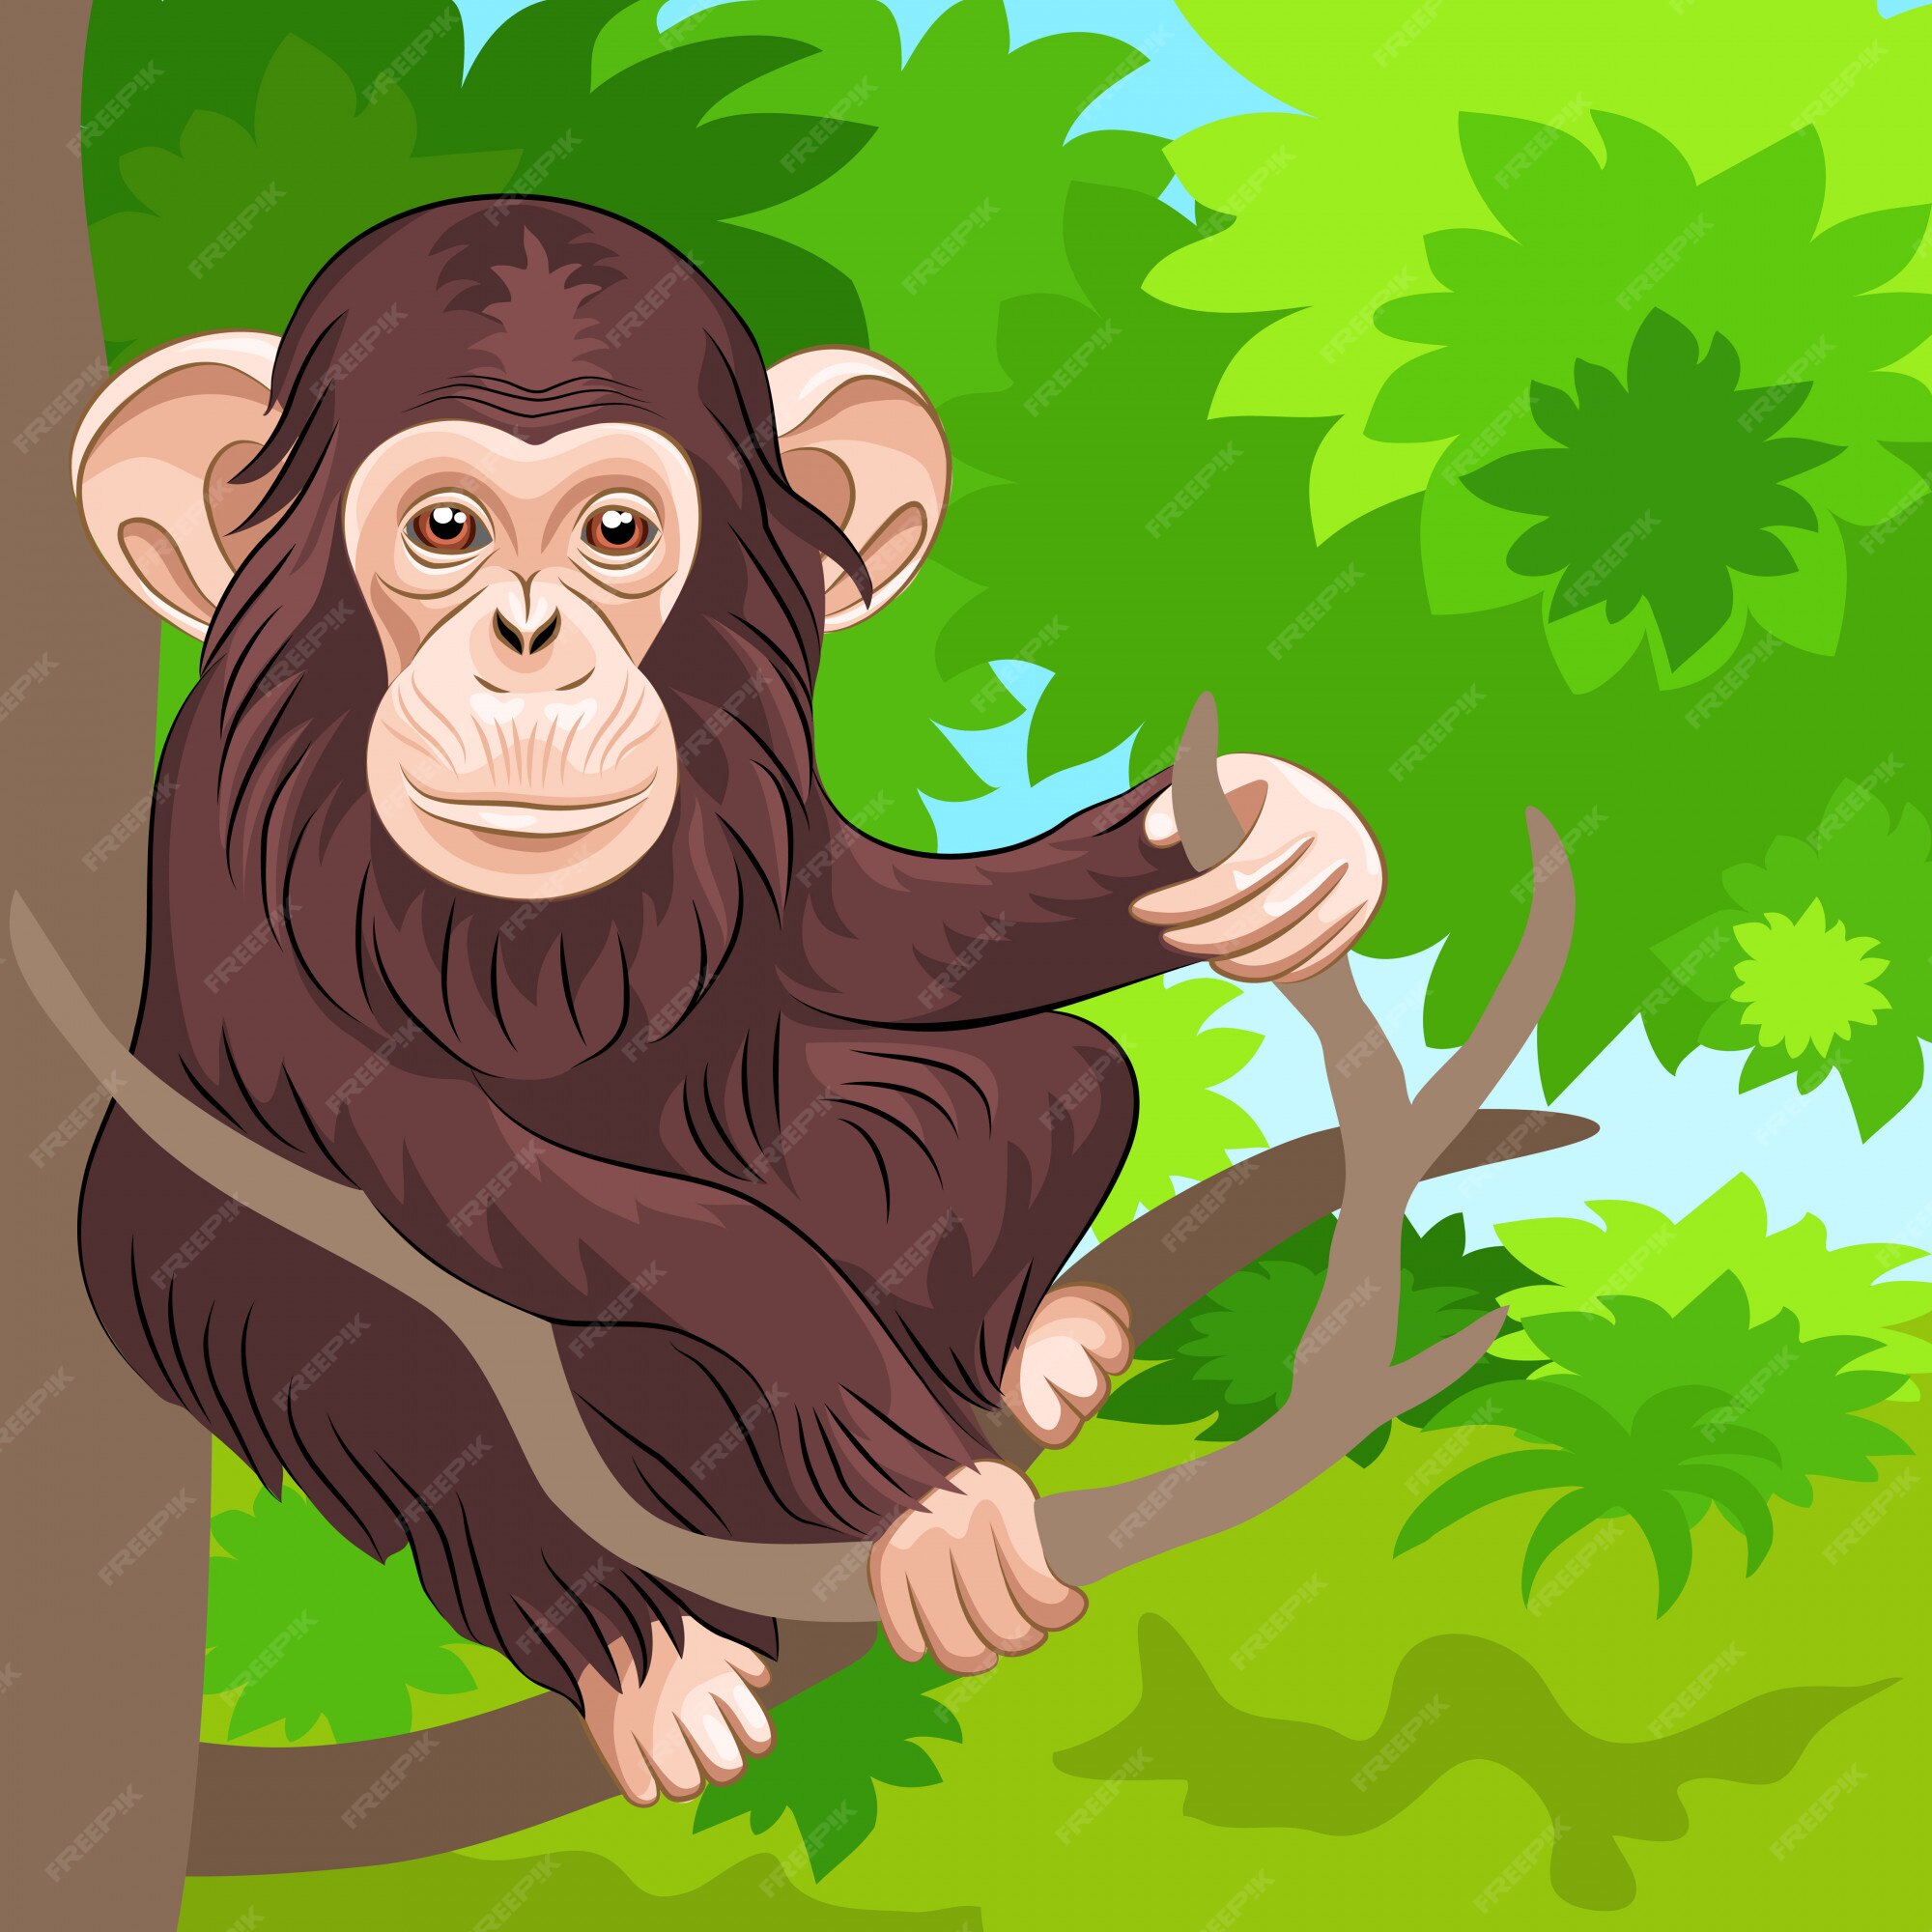 Diferentes Pães Macaco Personagem Animal Selvagem Zoológico Macaco Chimpanzé  Ilustração Vetorial. Royalty Free SVG, Cliparts, Vetores, e Ilustrações  Stock. Image 77468899